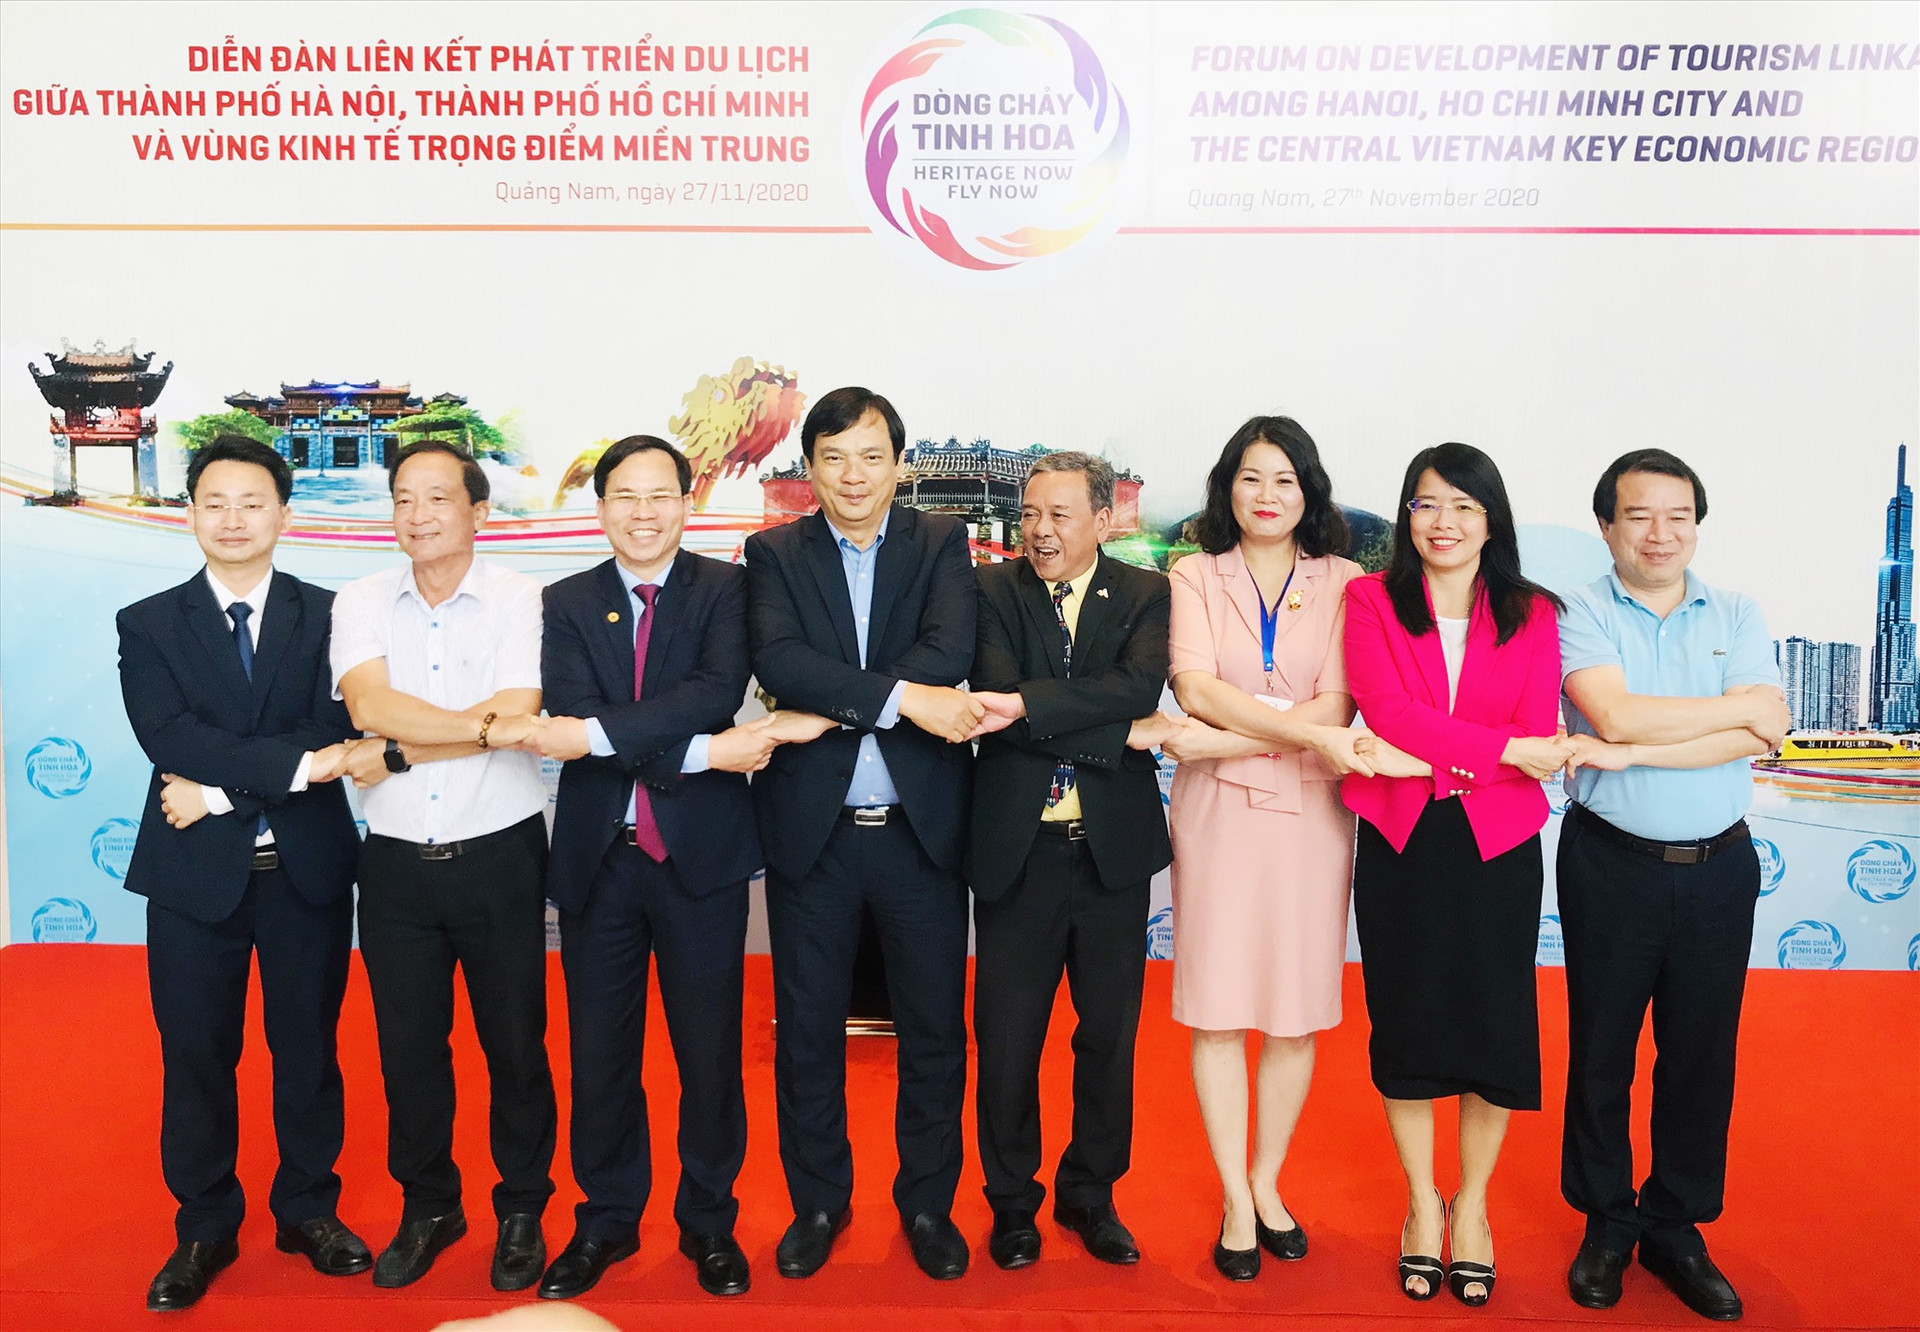 Ngành du lịch trong Vùng kinh tế trọng điểm miền Trung đang tăng cường kết nối với du lịch Hà Nội và TP.Hồ Chí Minh. Ảnh: Q.T